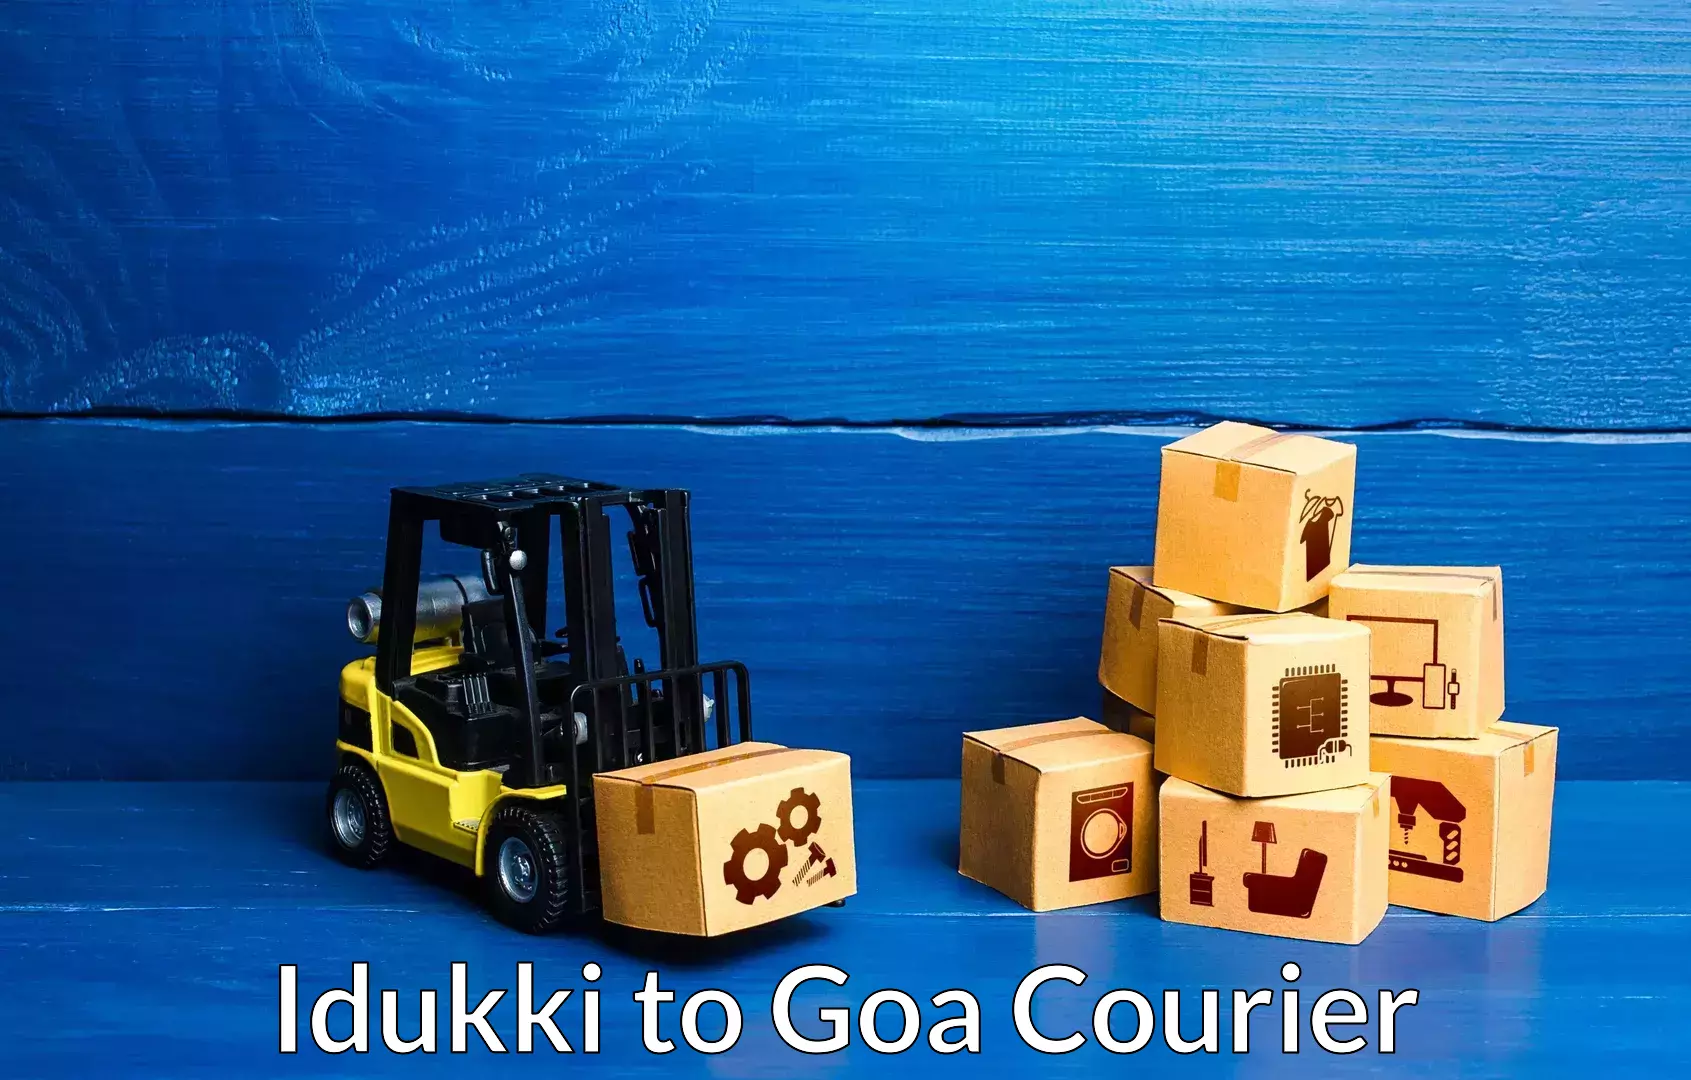 Professional furniture movers in Idukki to Goa